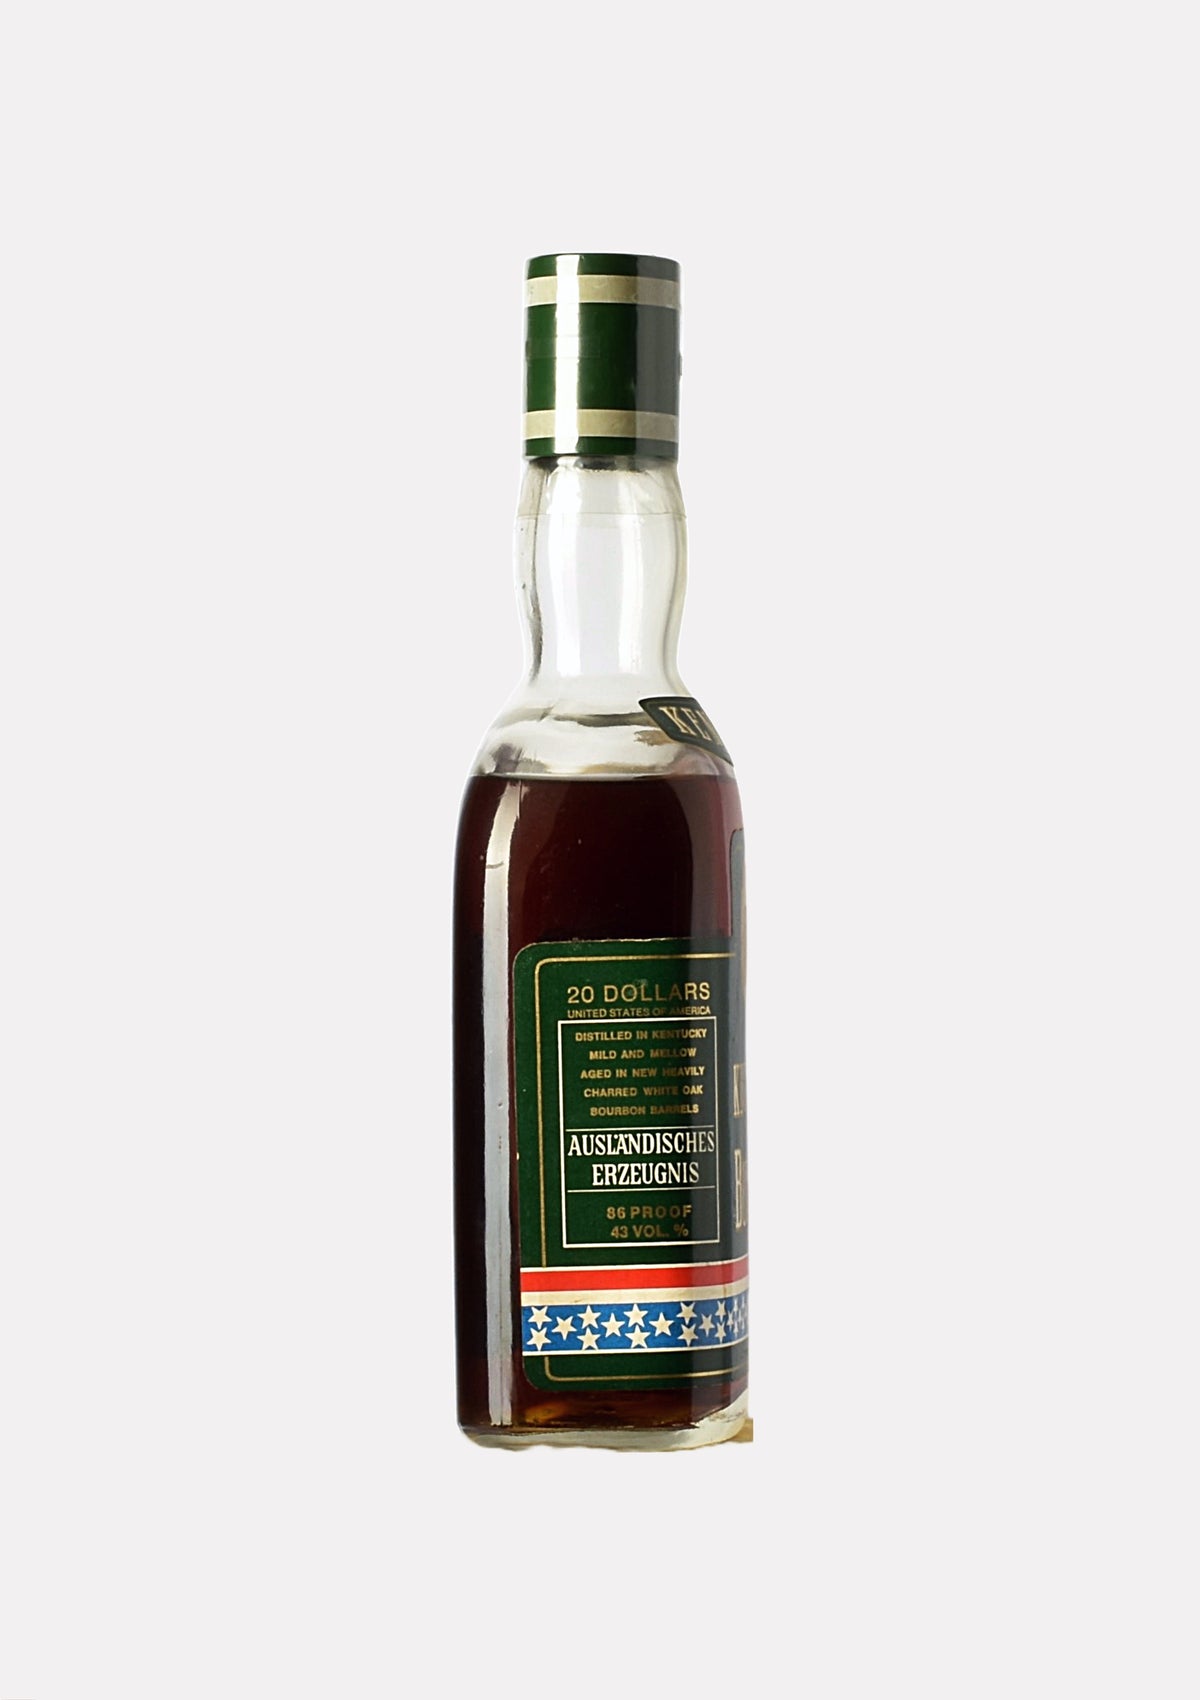 20 Dollars Kentucky Straight Bourbon Whiskey